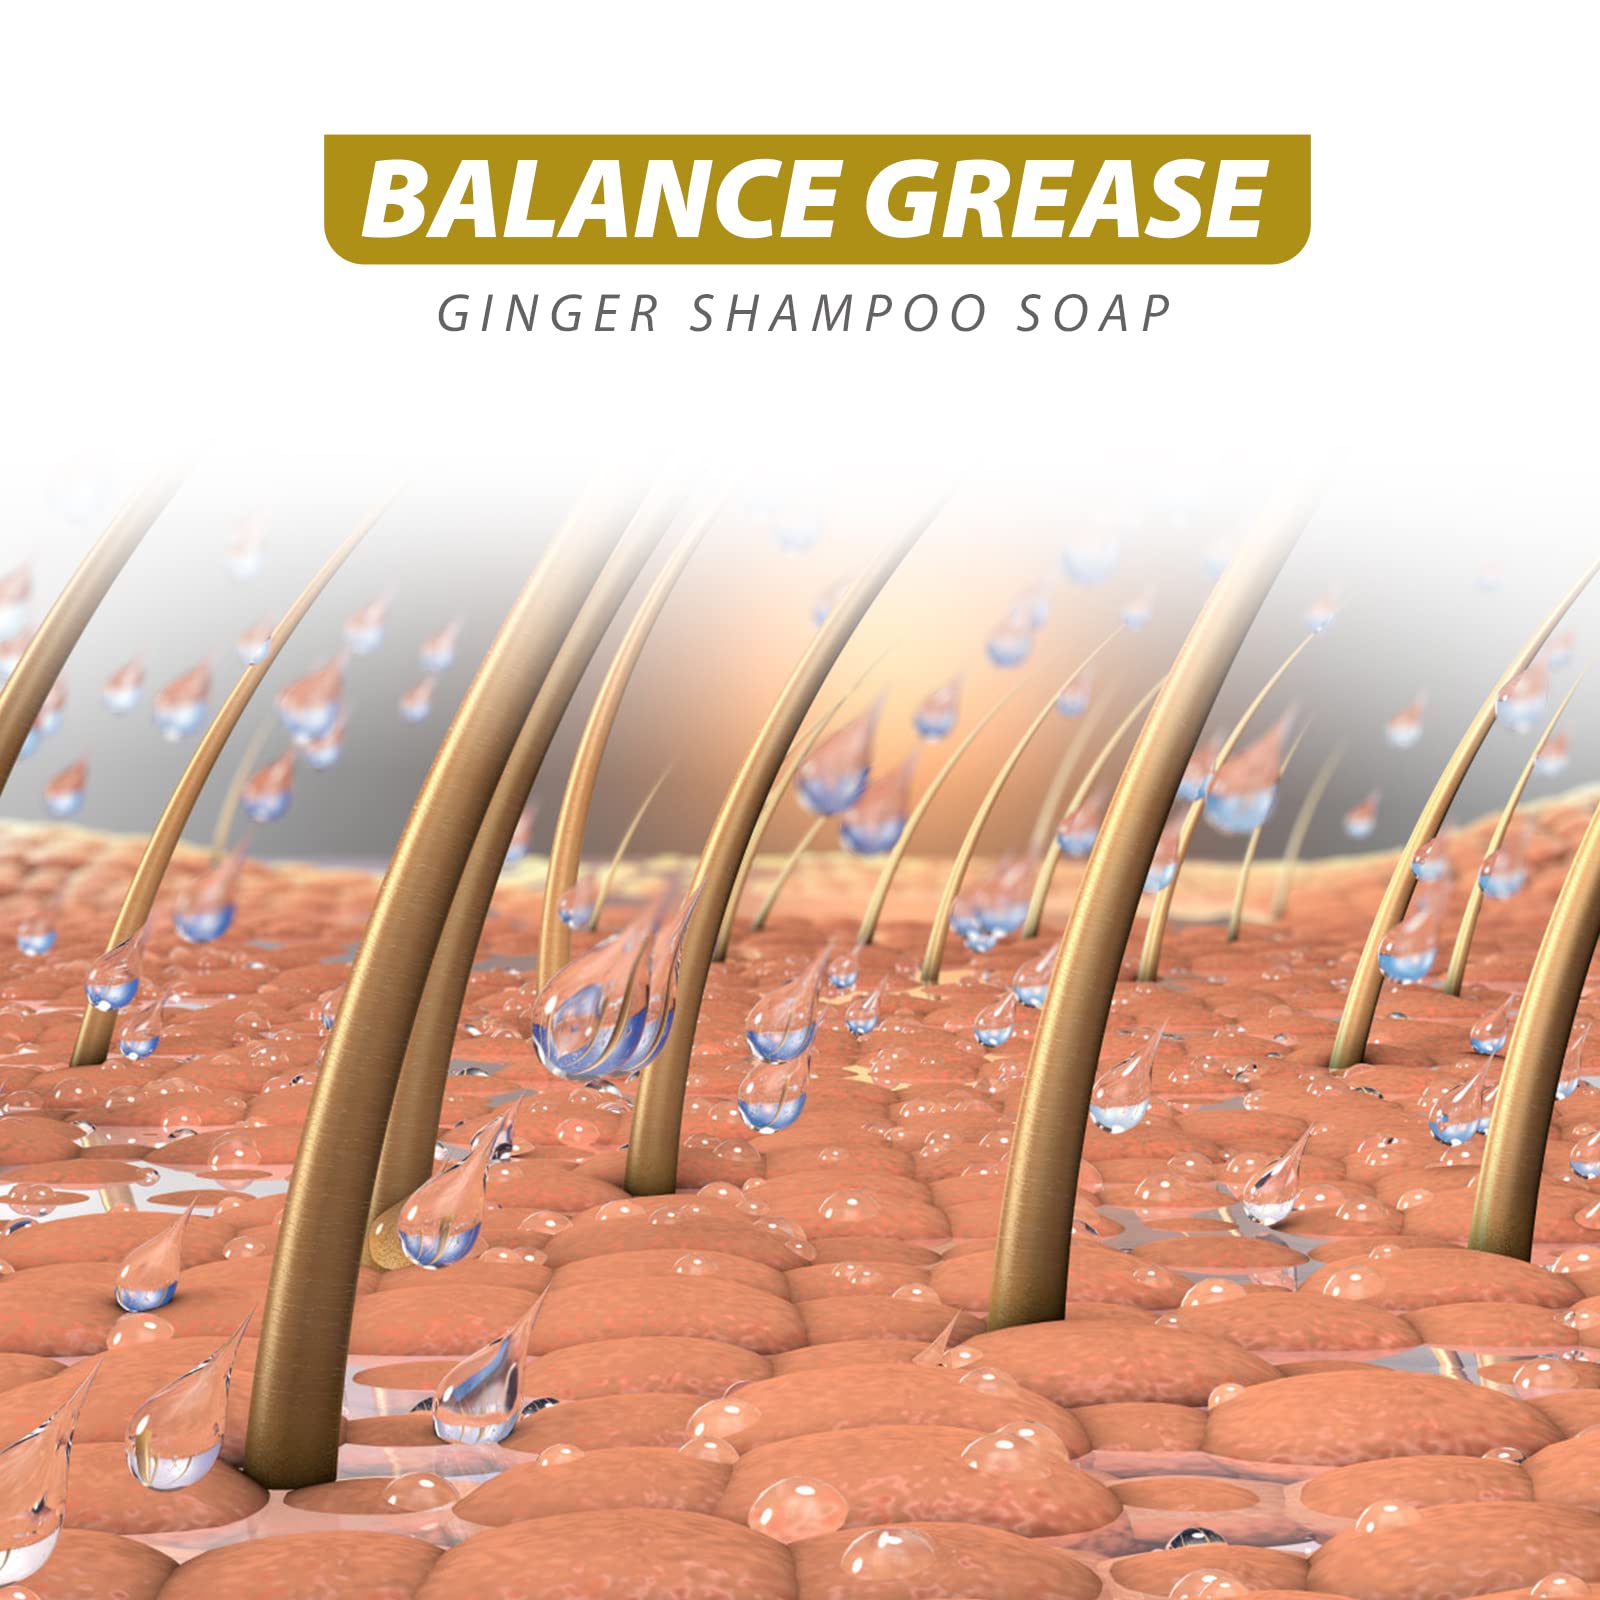 Zoreni Ginger Hair Regrowth Shampoo Bar, Anti Hair Loss Ginger Shampoo Soap, Natural Organic Ginger Shampoo Bar Promotes Hair Growth, Anti-dandruff and Anti-itching Ginger Bar Soap 2 Fl Oz (Pack of 5)